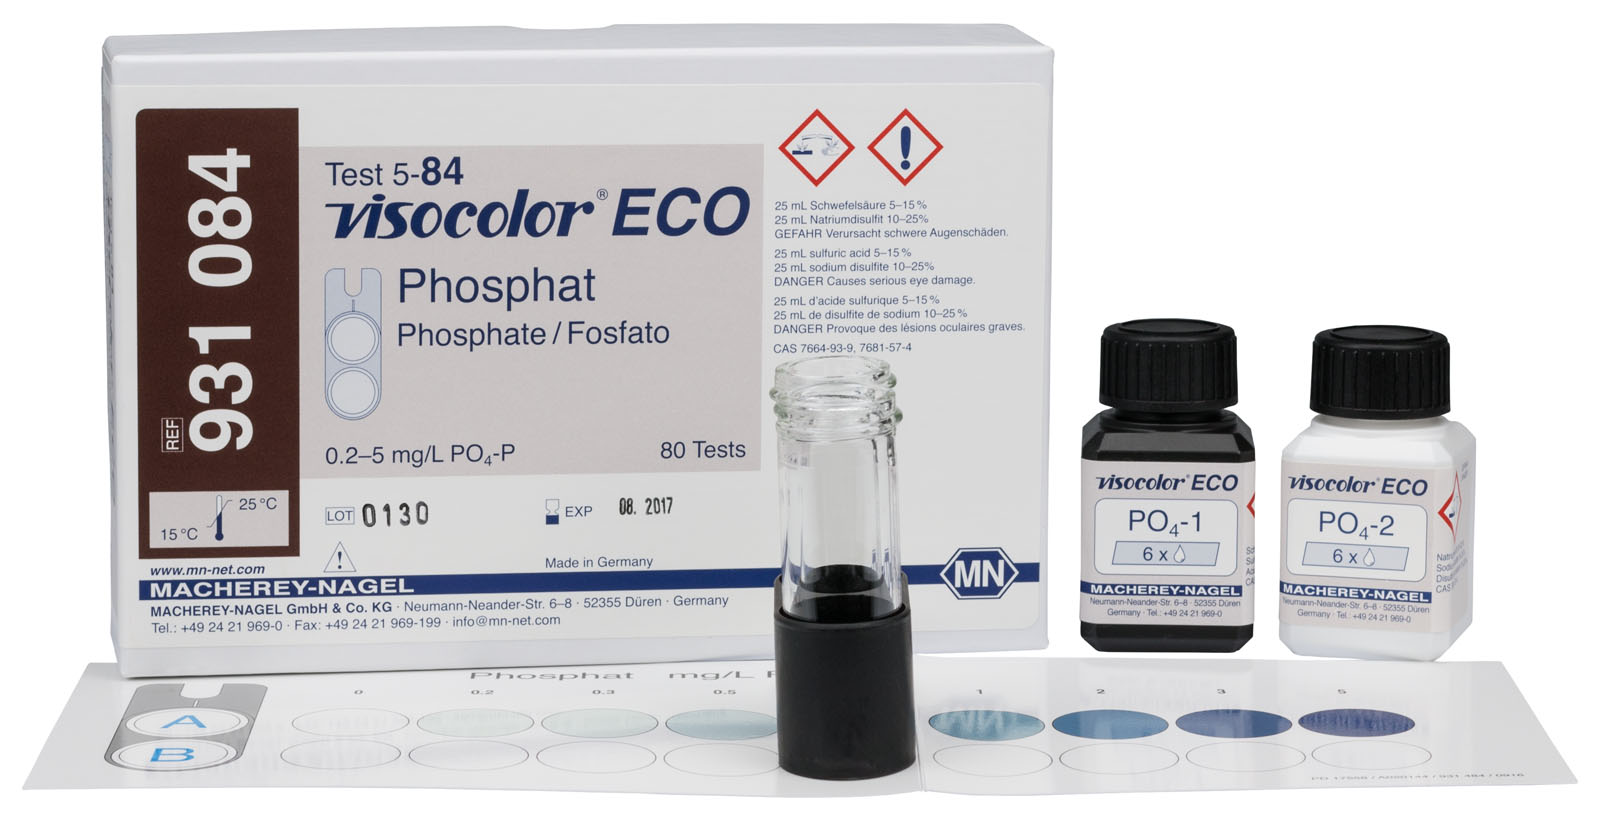 VISOCOLOR® ECO Phosphate Test Kit